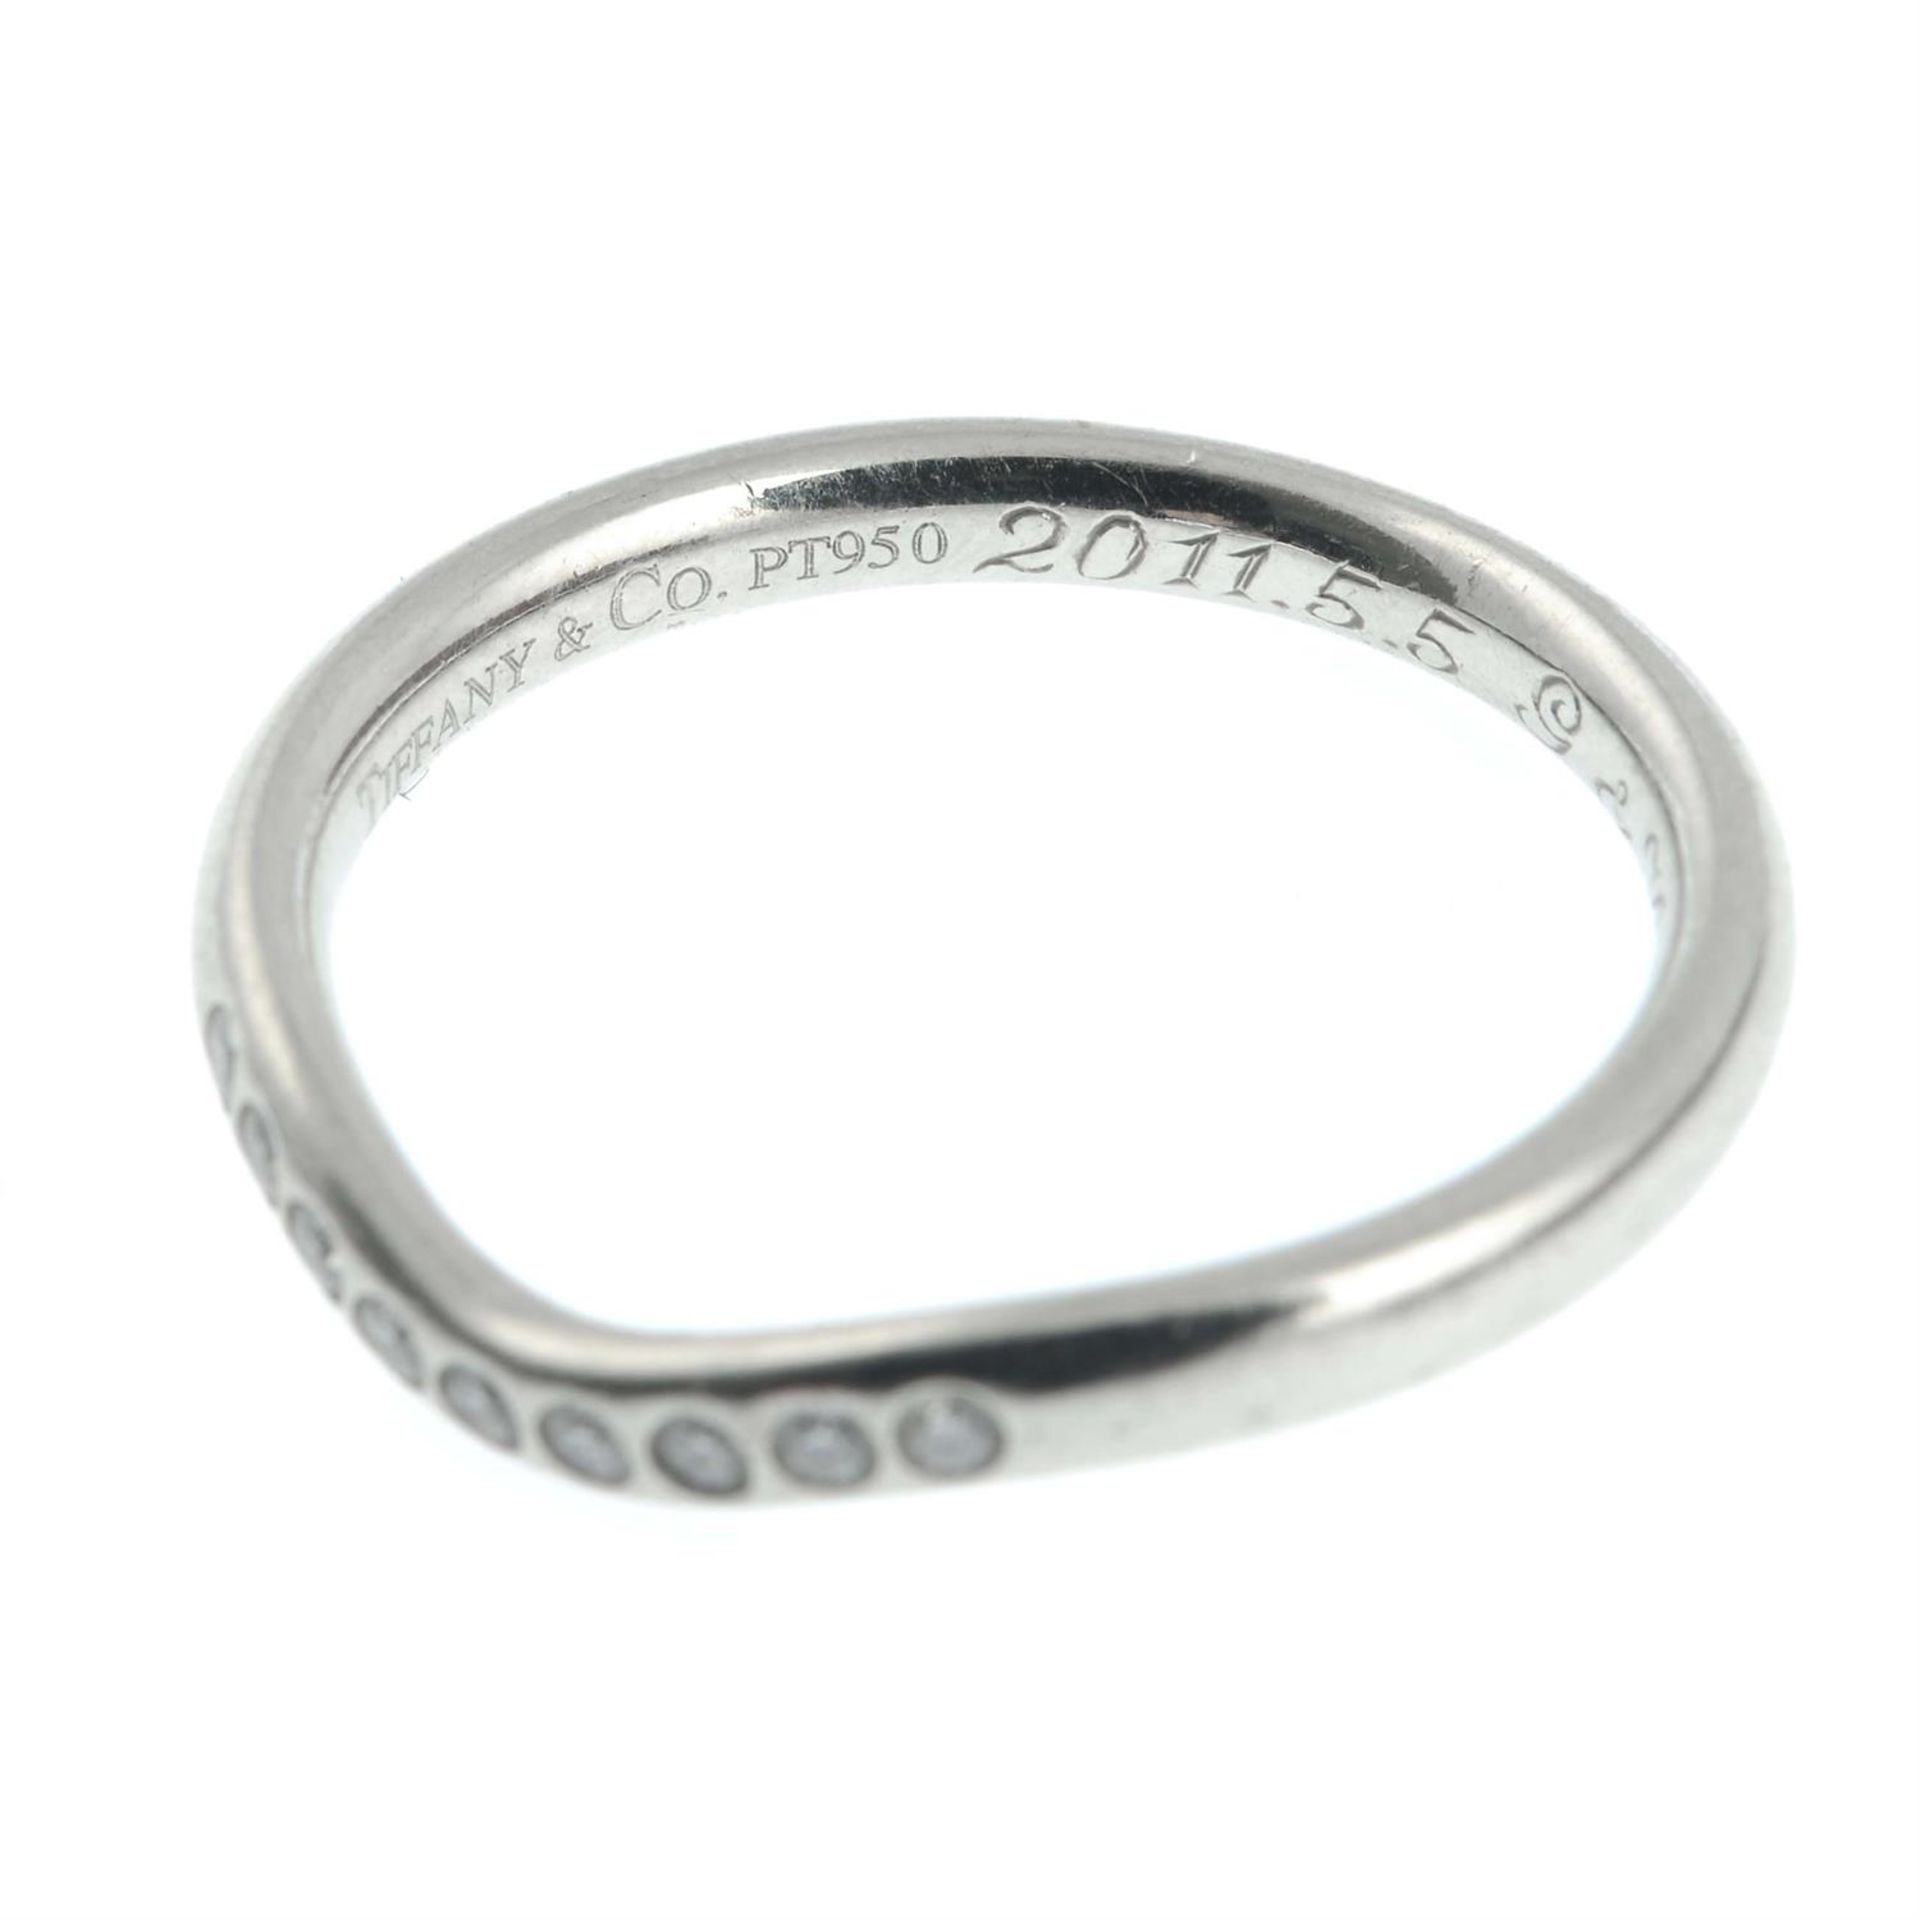 A brilliant-cut diamond chevron ring, by Elsa Peretti for Tiffany & Co. - Image 2 of 2